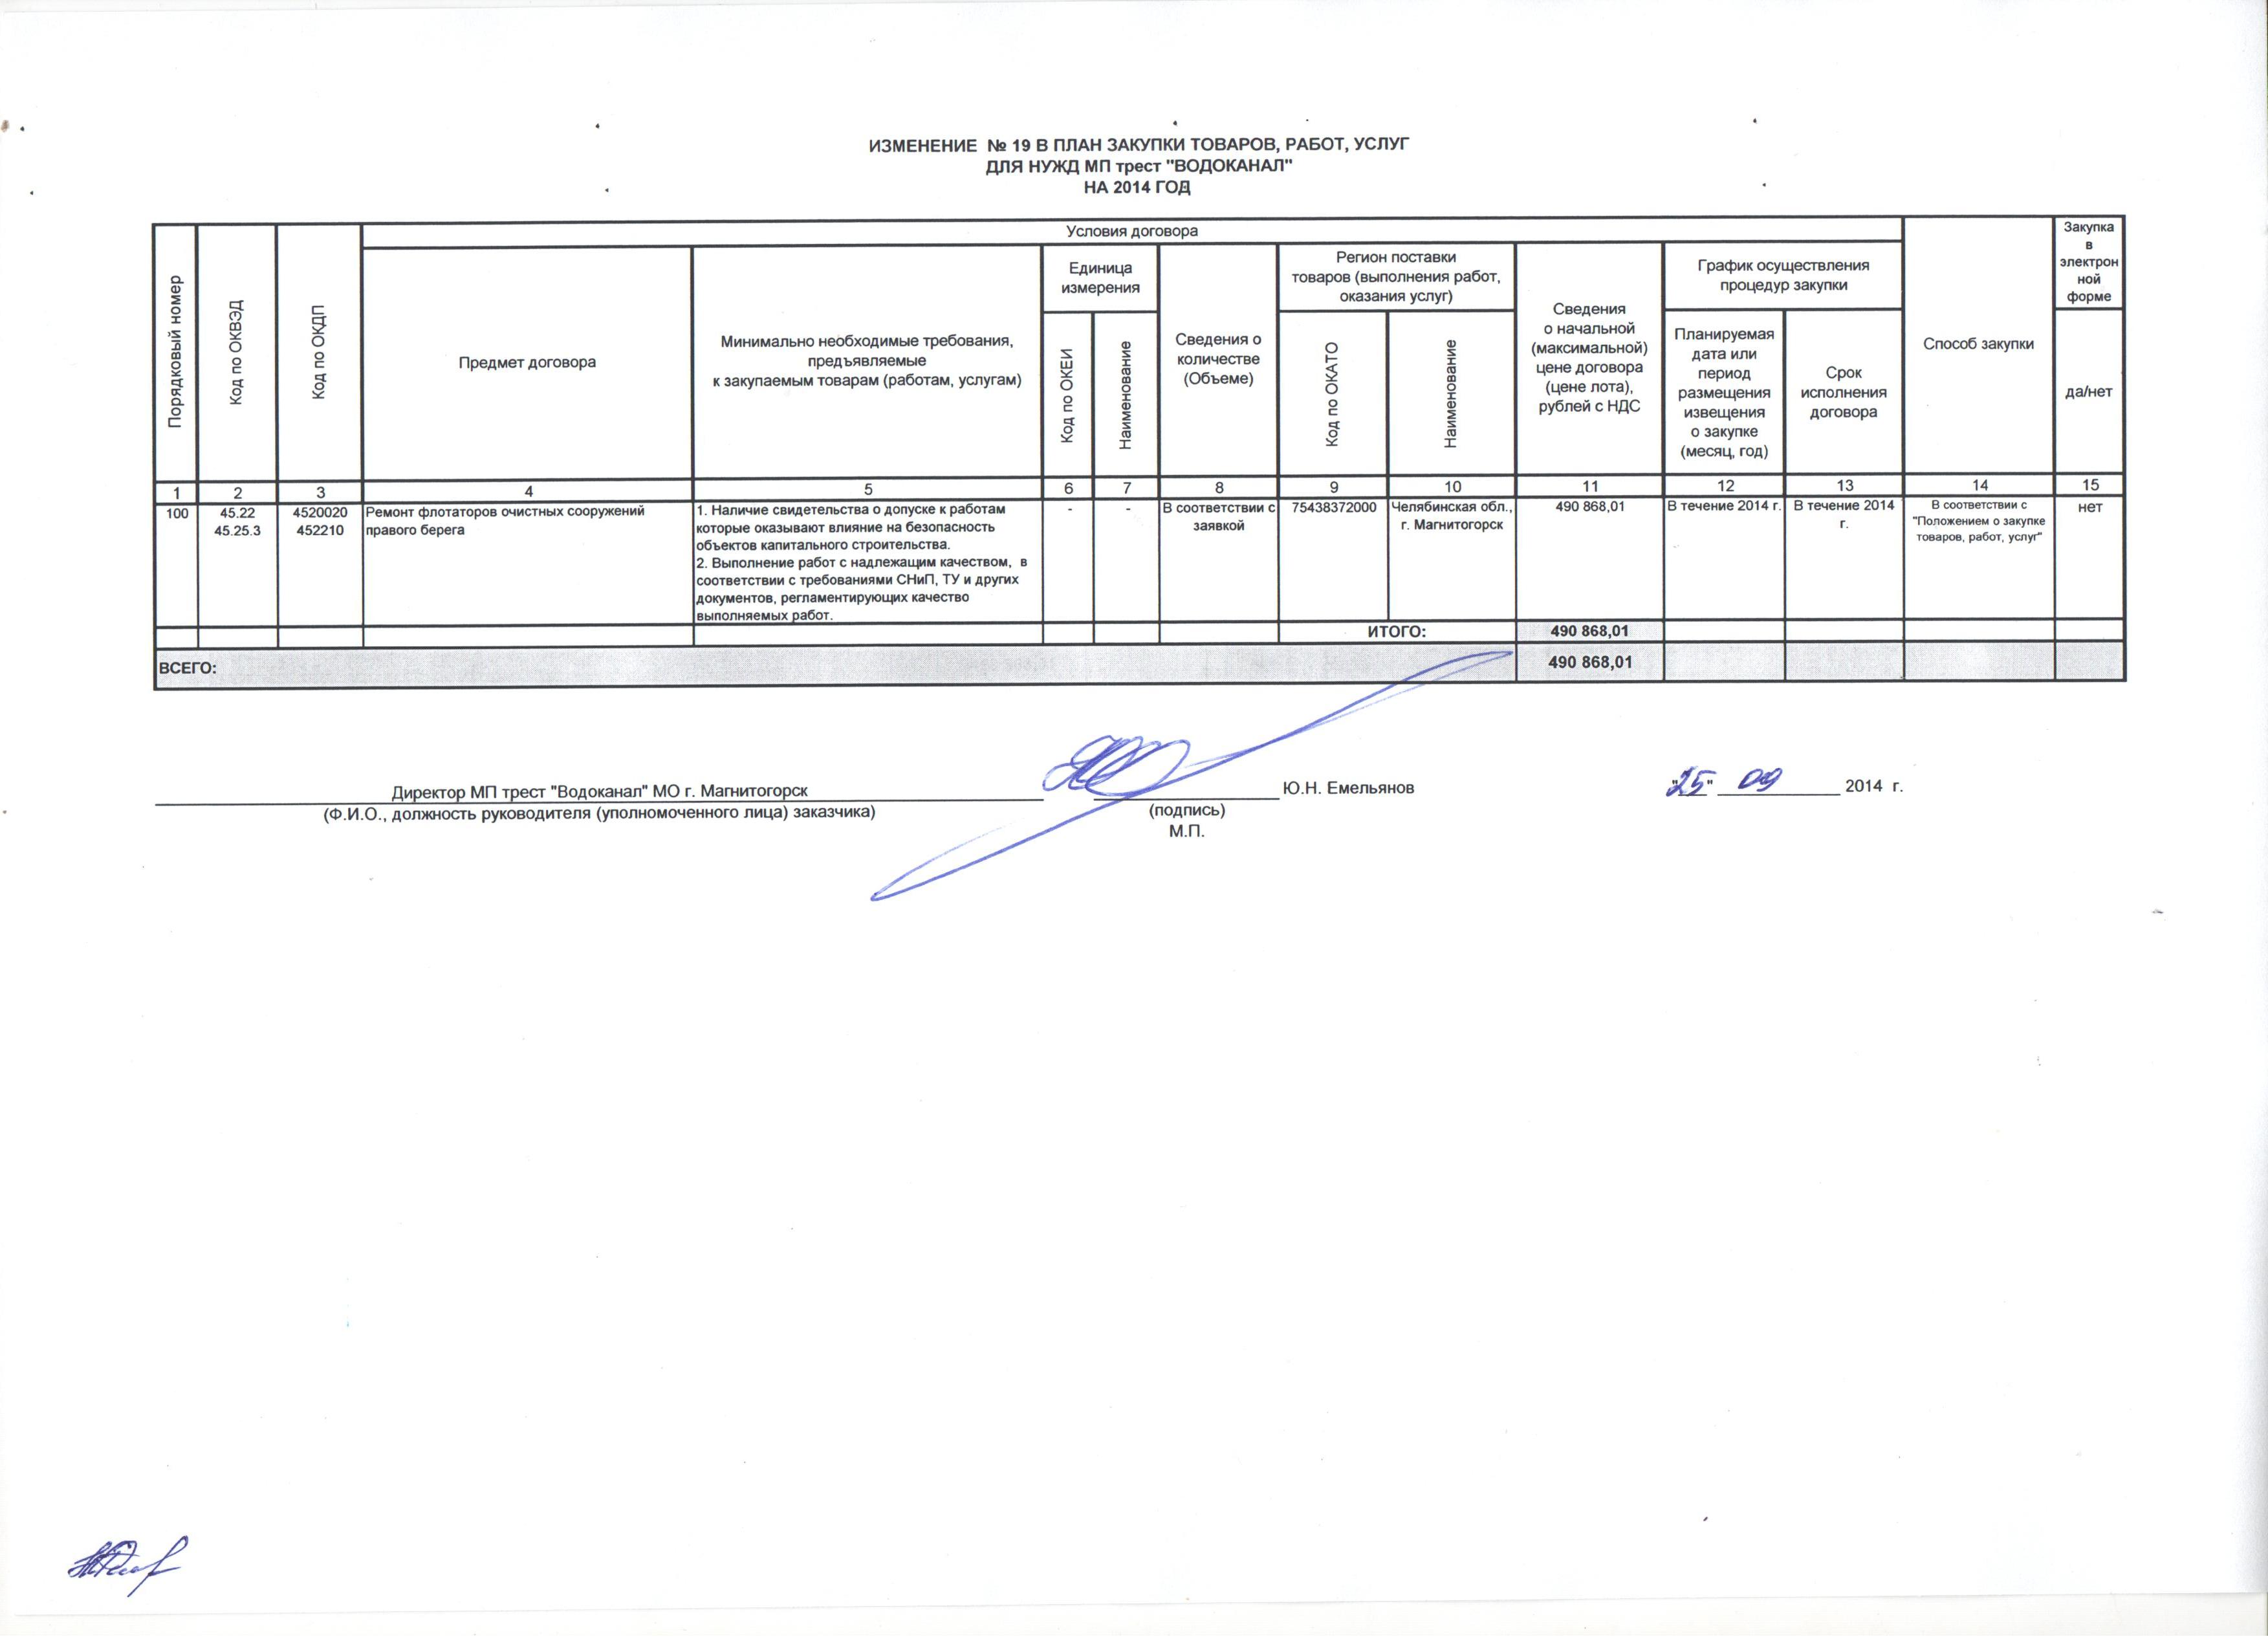 Изменение к плану на 2014 г. 19.jpg